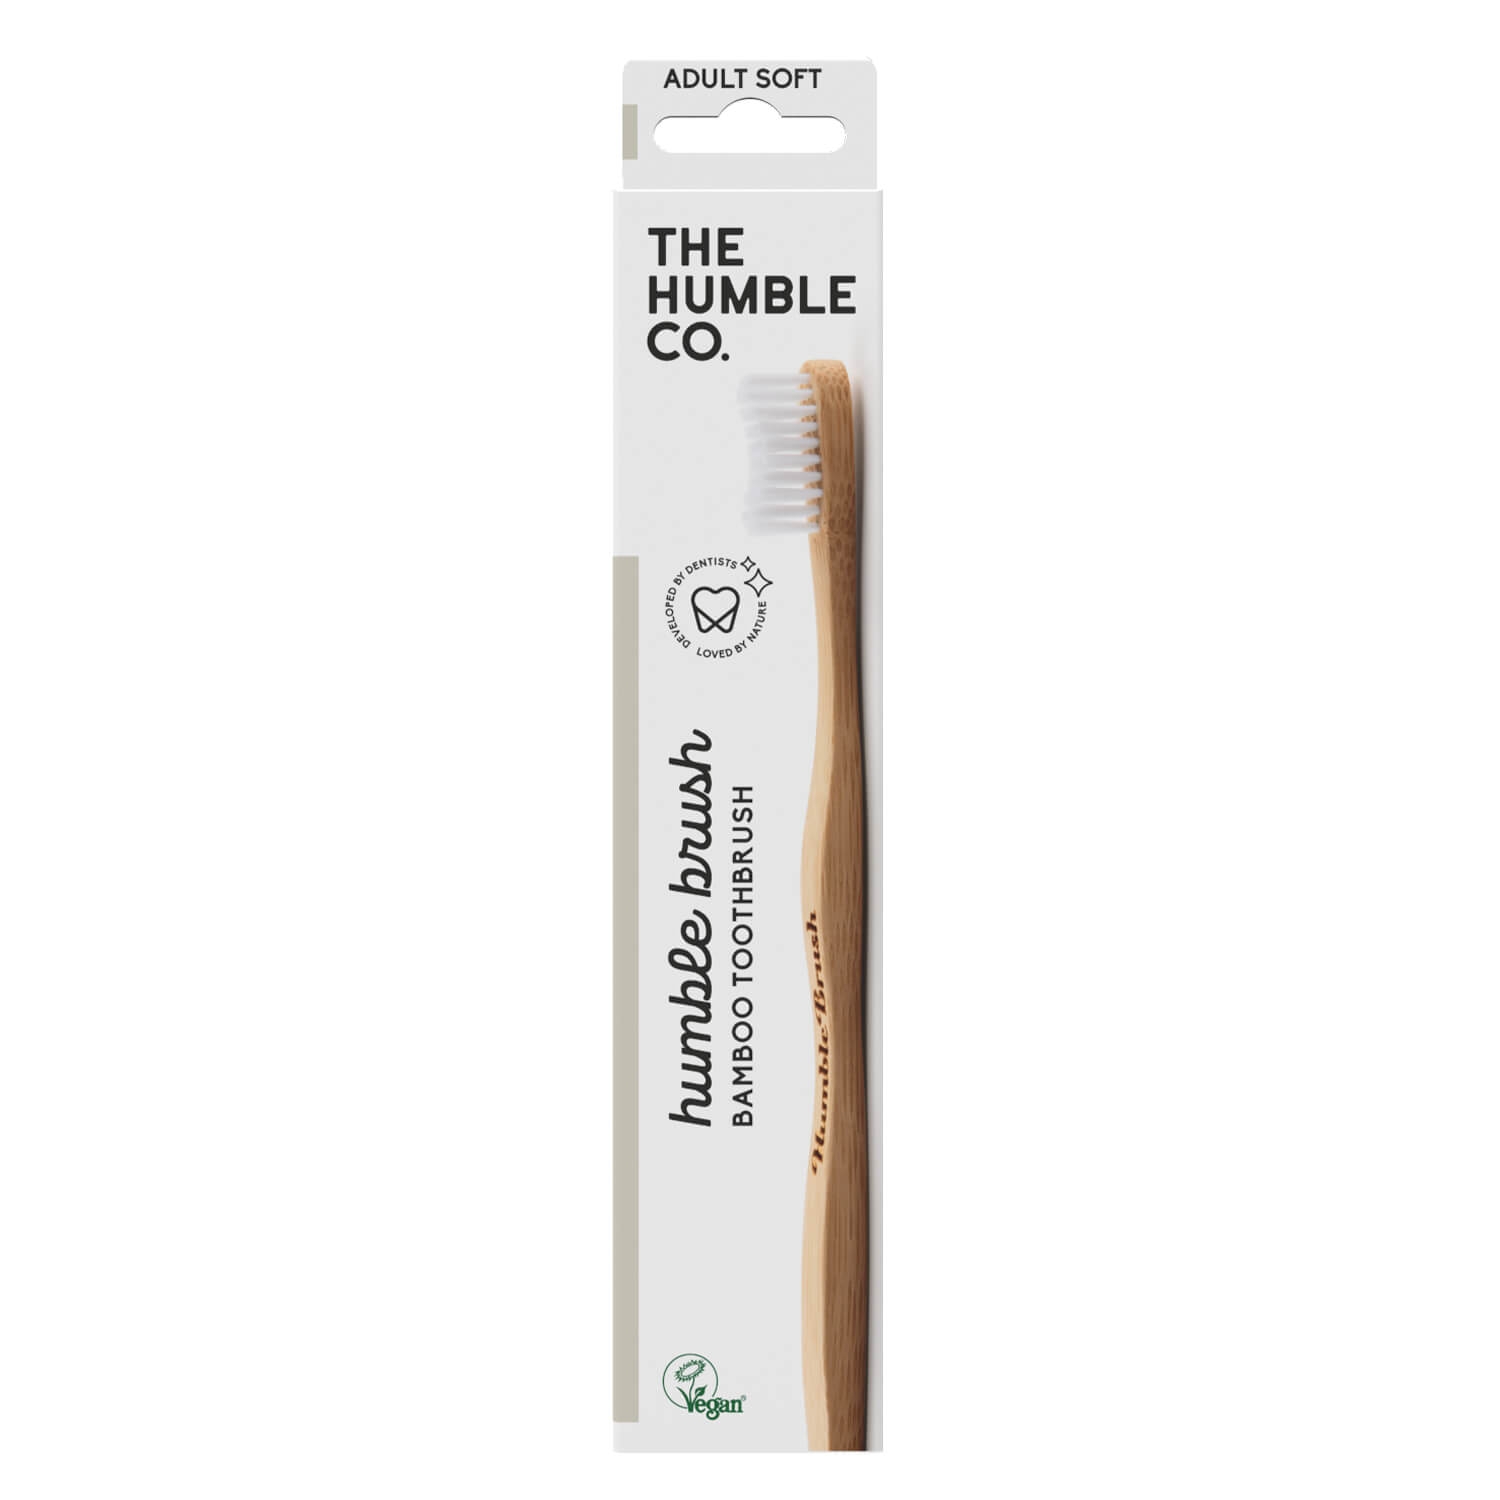 Produktbild von THE HUMBLE CO. - Humble Brush Zahnbürste Erwachsene Weiss